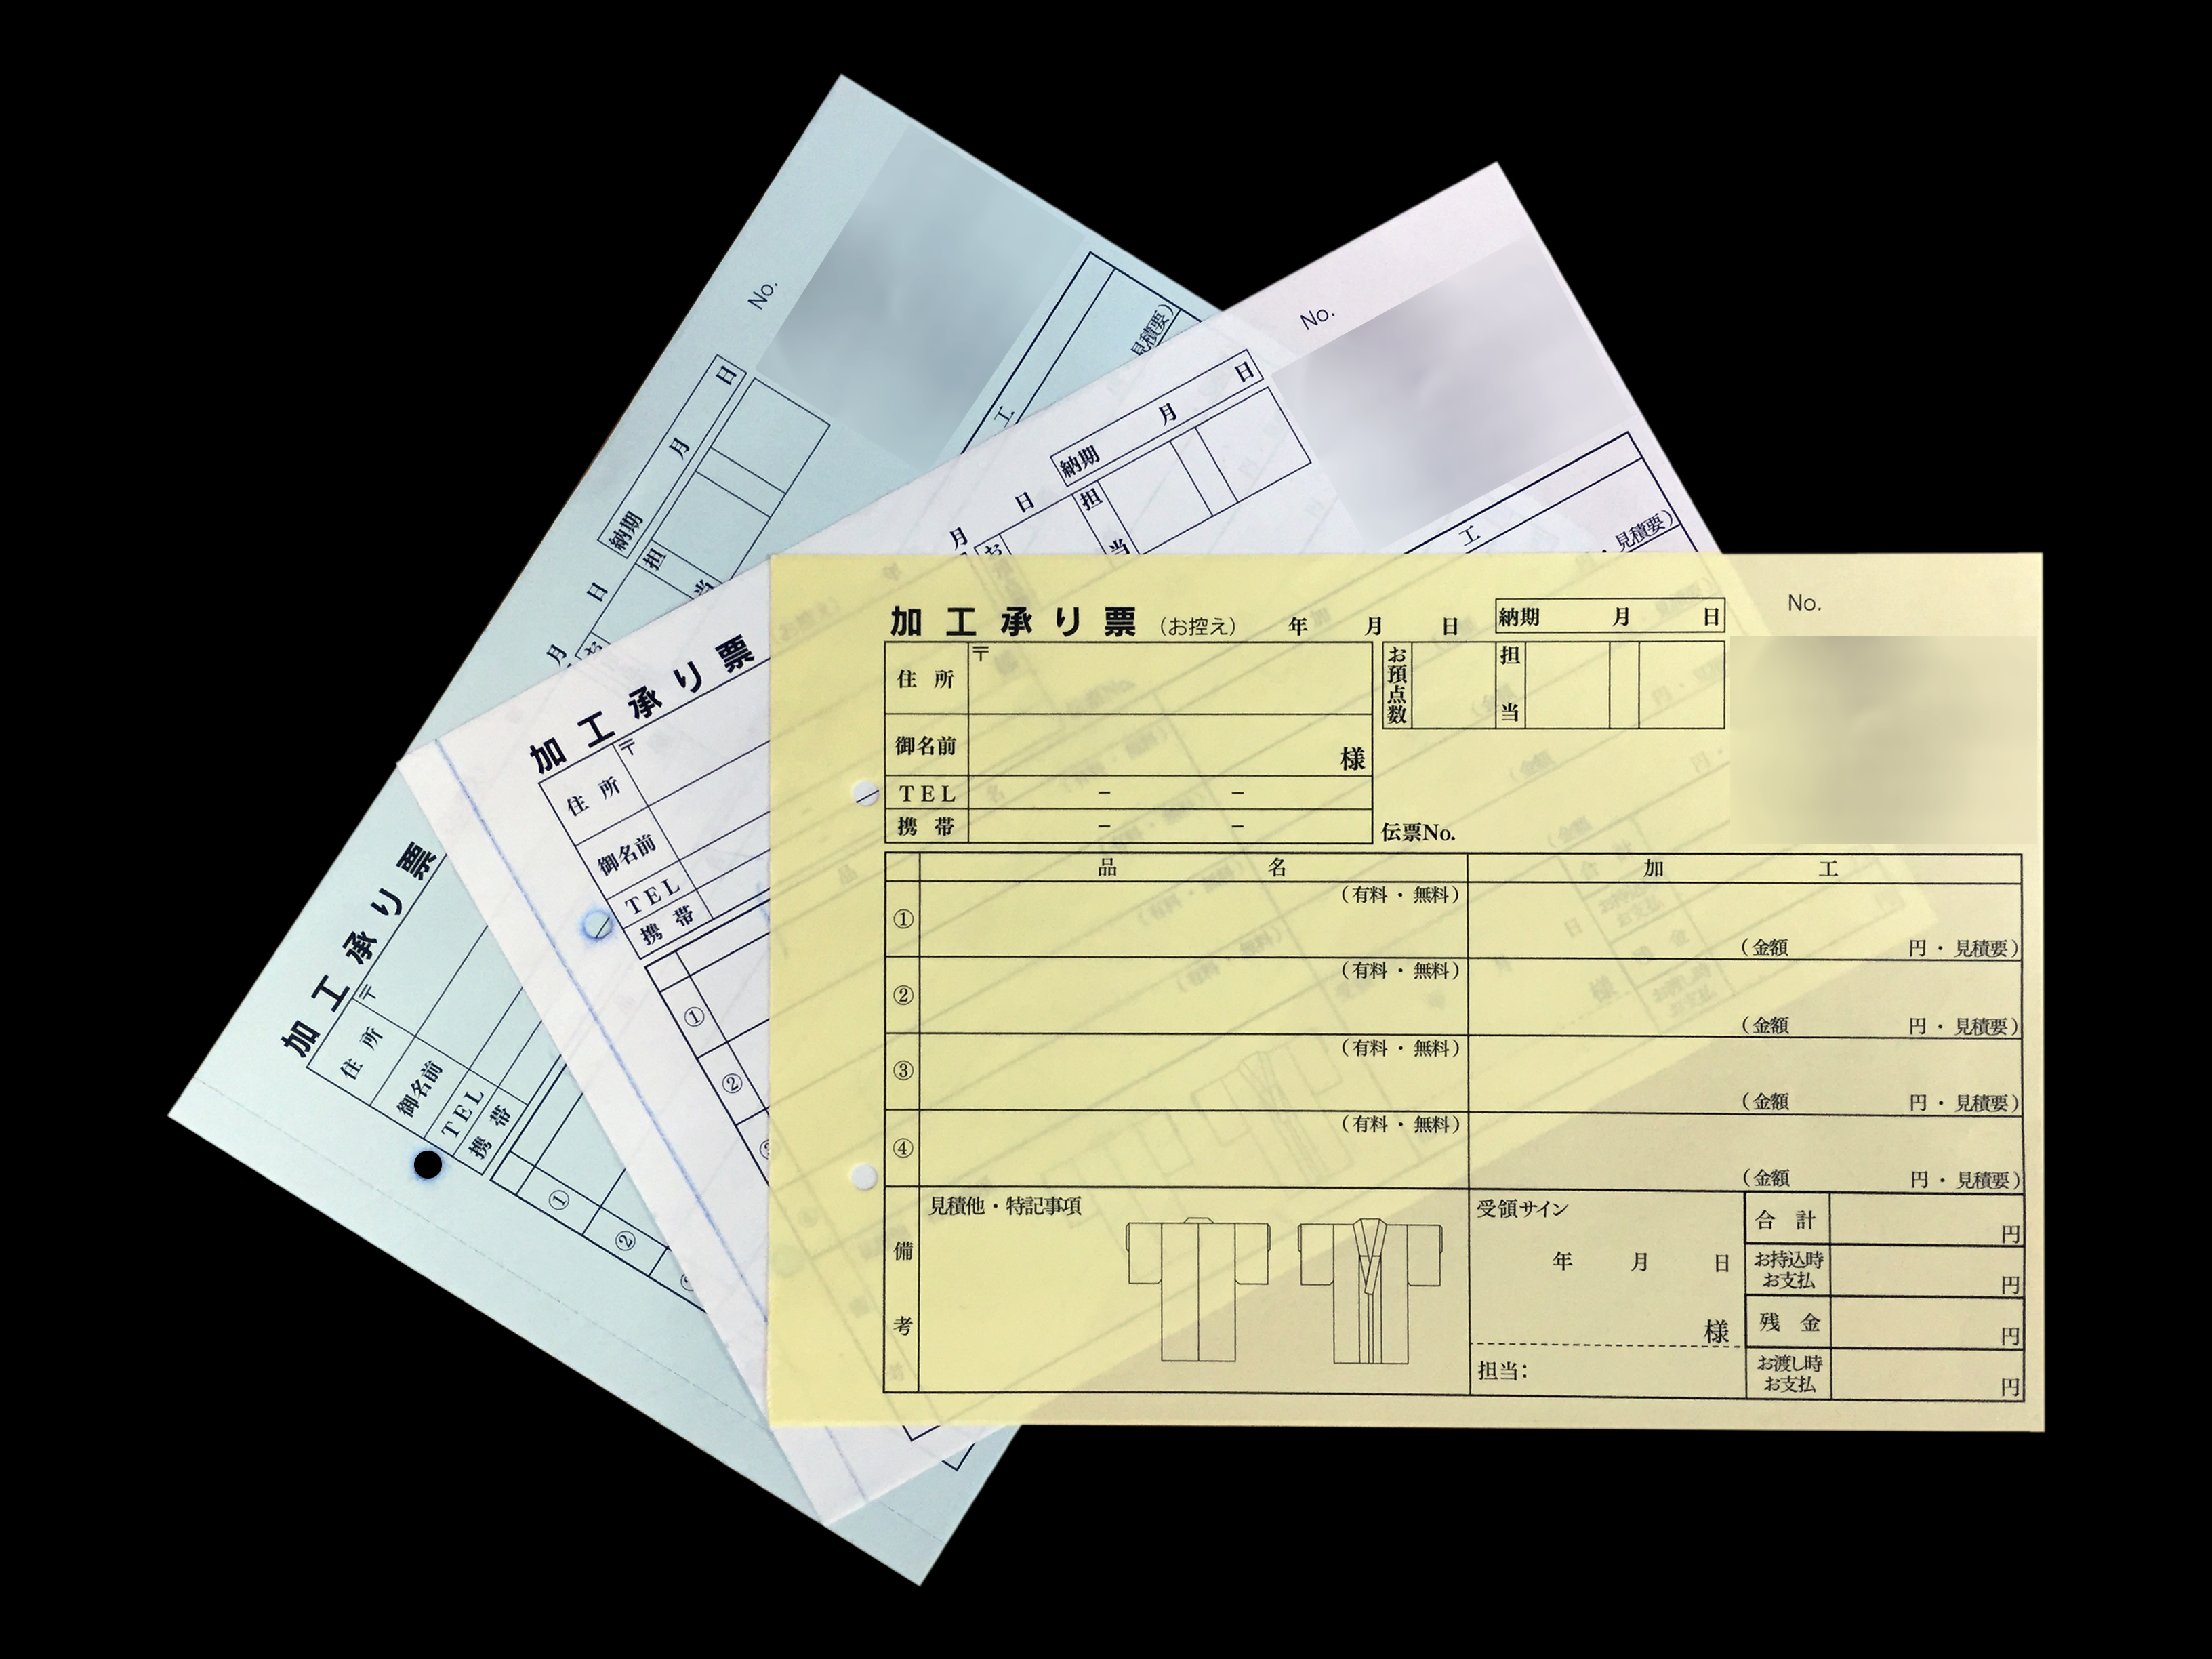 呉服店で使用する加工承り票(3枚複写)の伝票作成実績